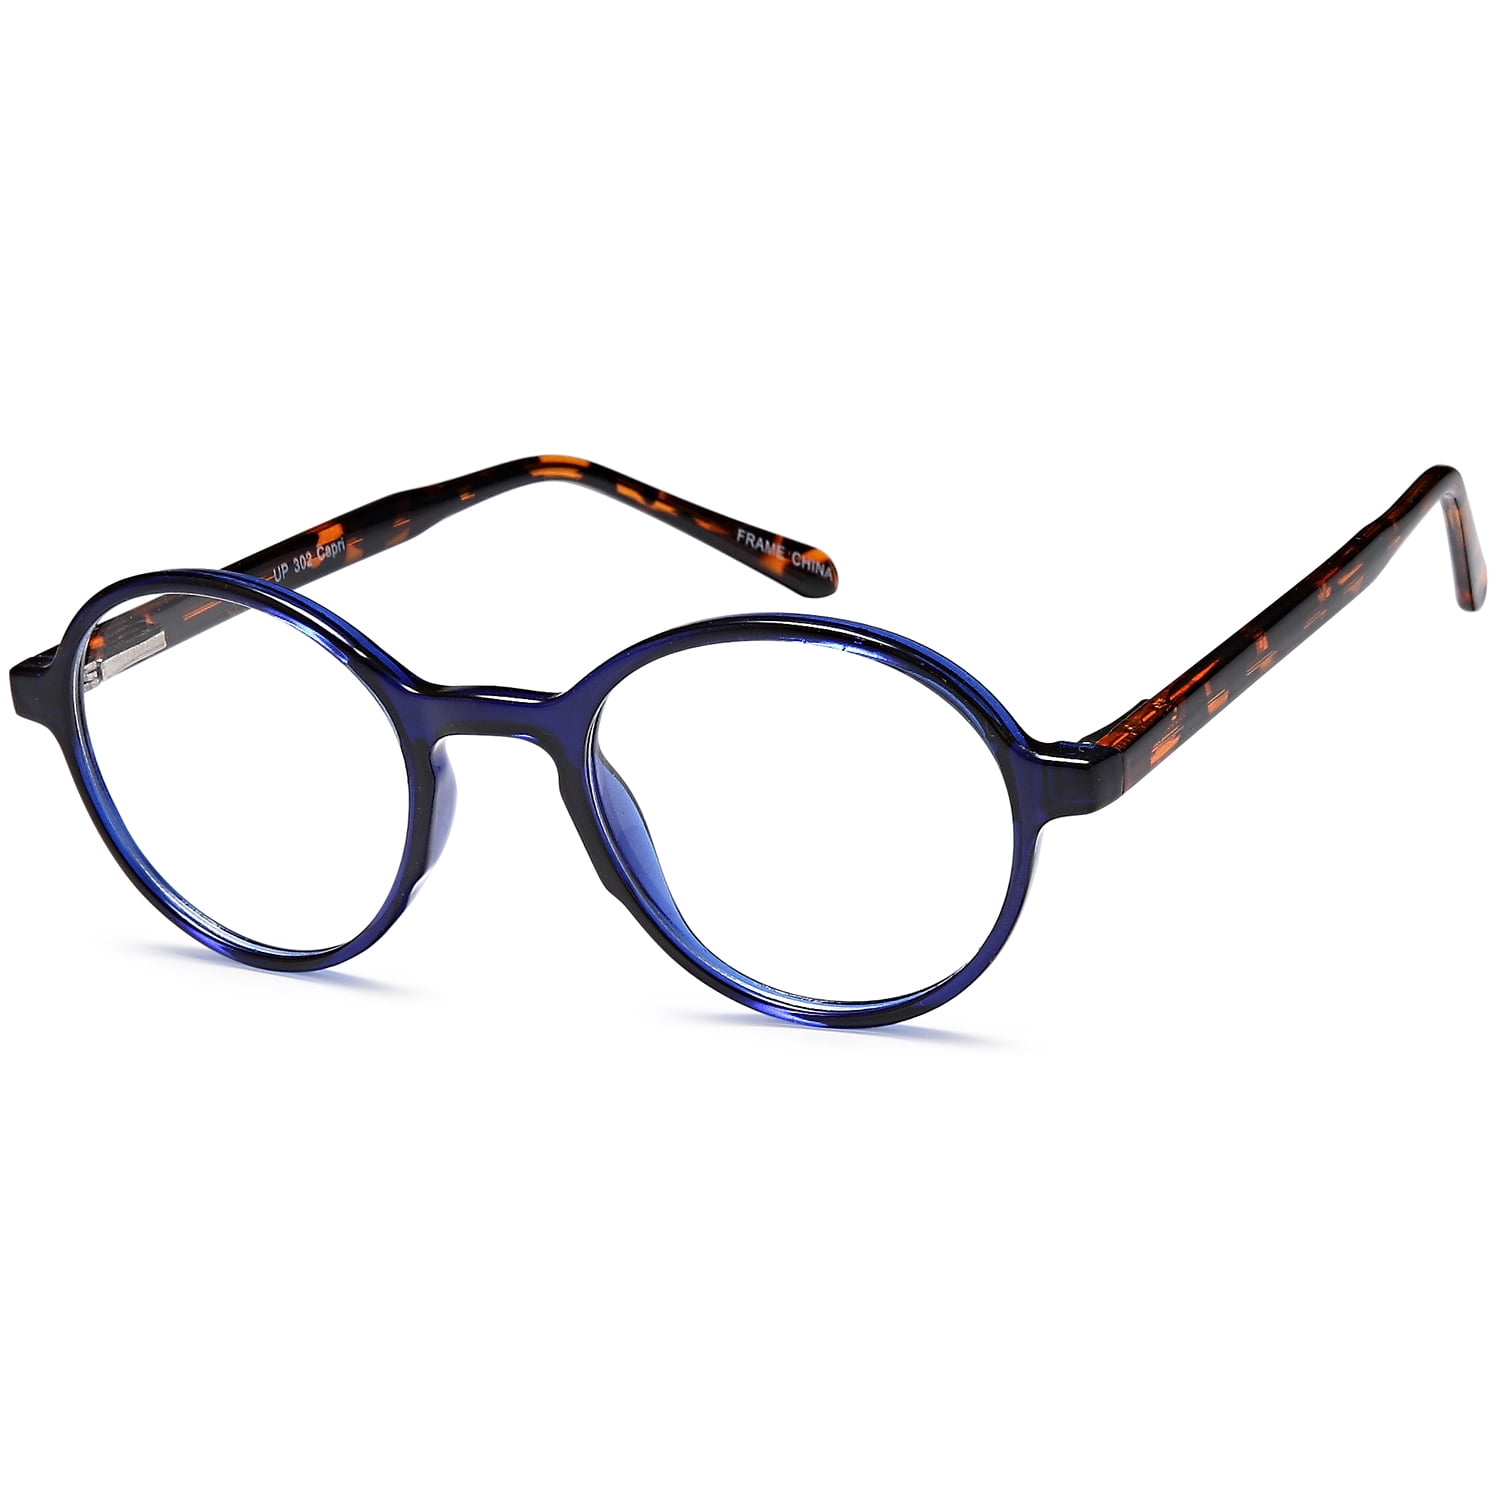 Unisex Eyeglasses 44 20 140 Blue Tortoise Plastic - Walmart.com